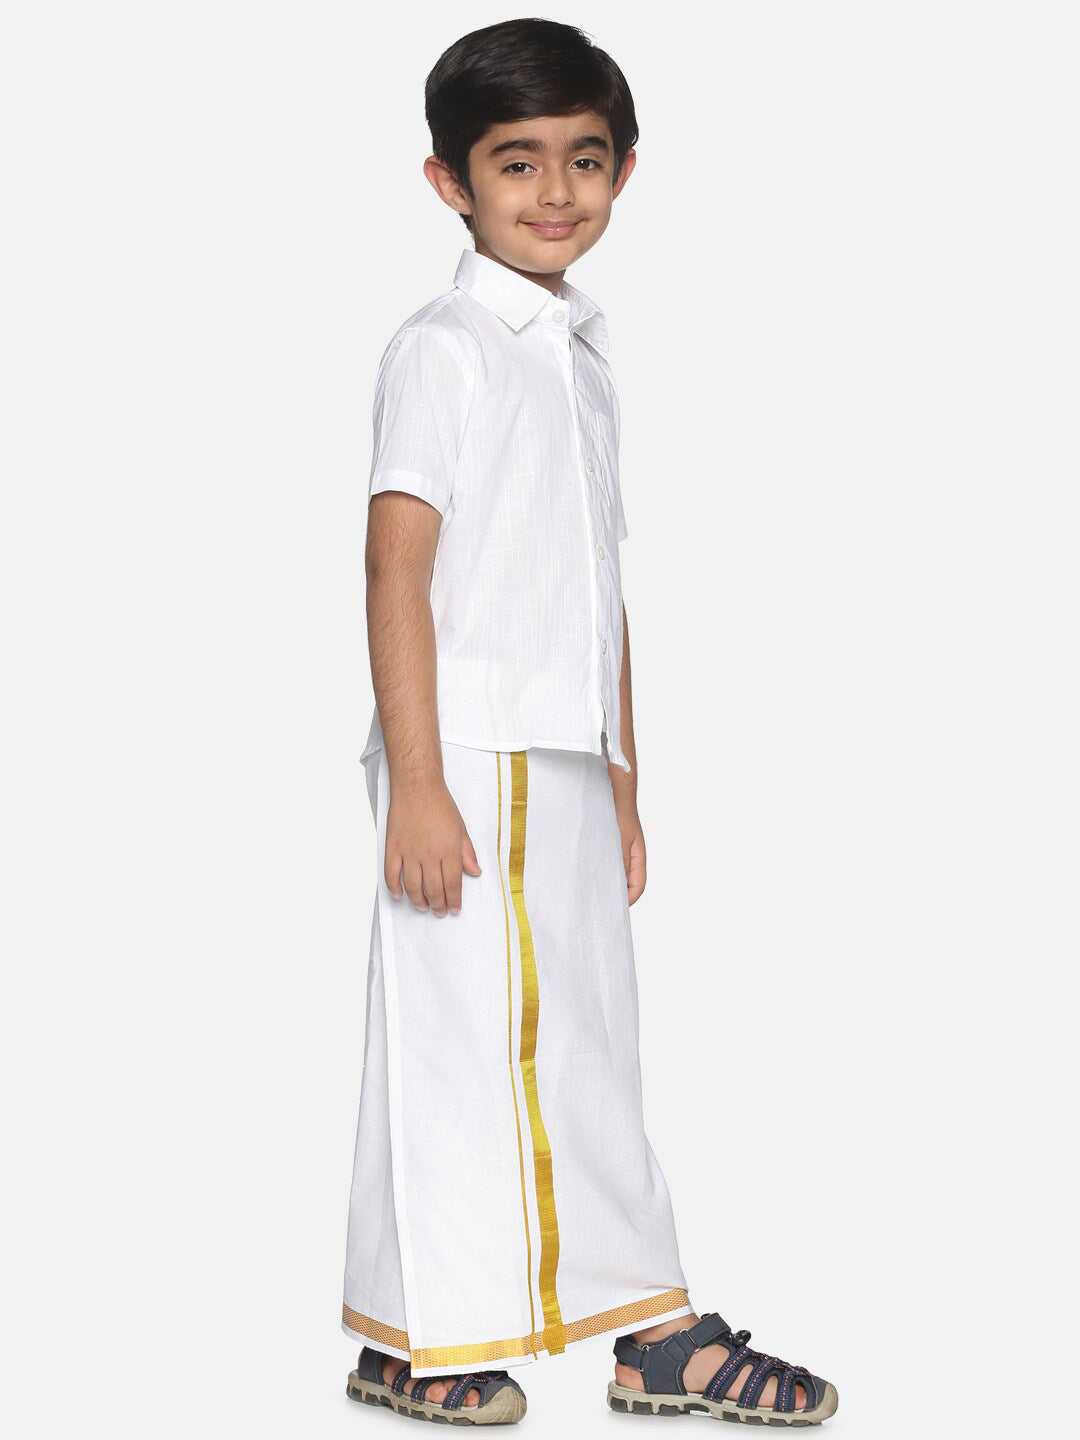 Sethukrishna Boys White & Gold-Toned Shirt with Dhoti - Distacart